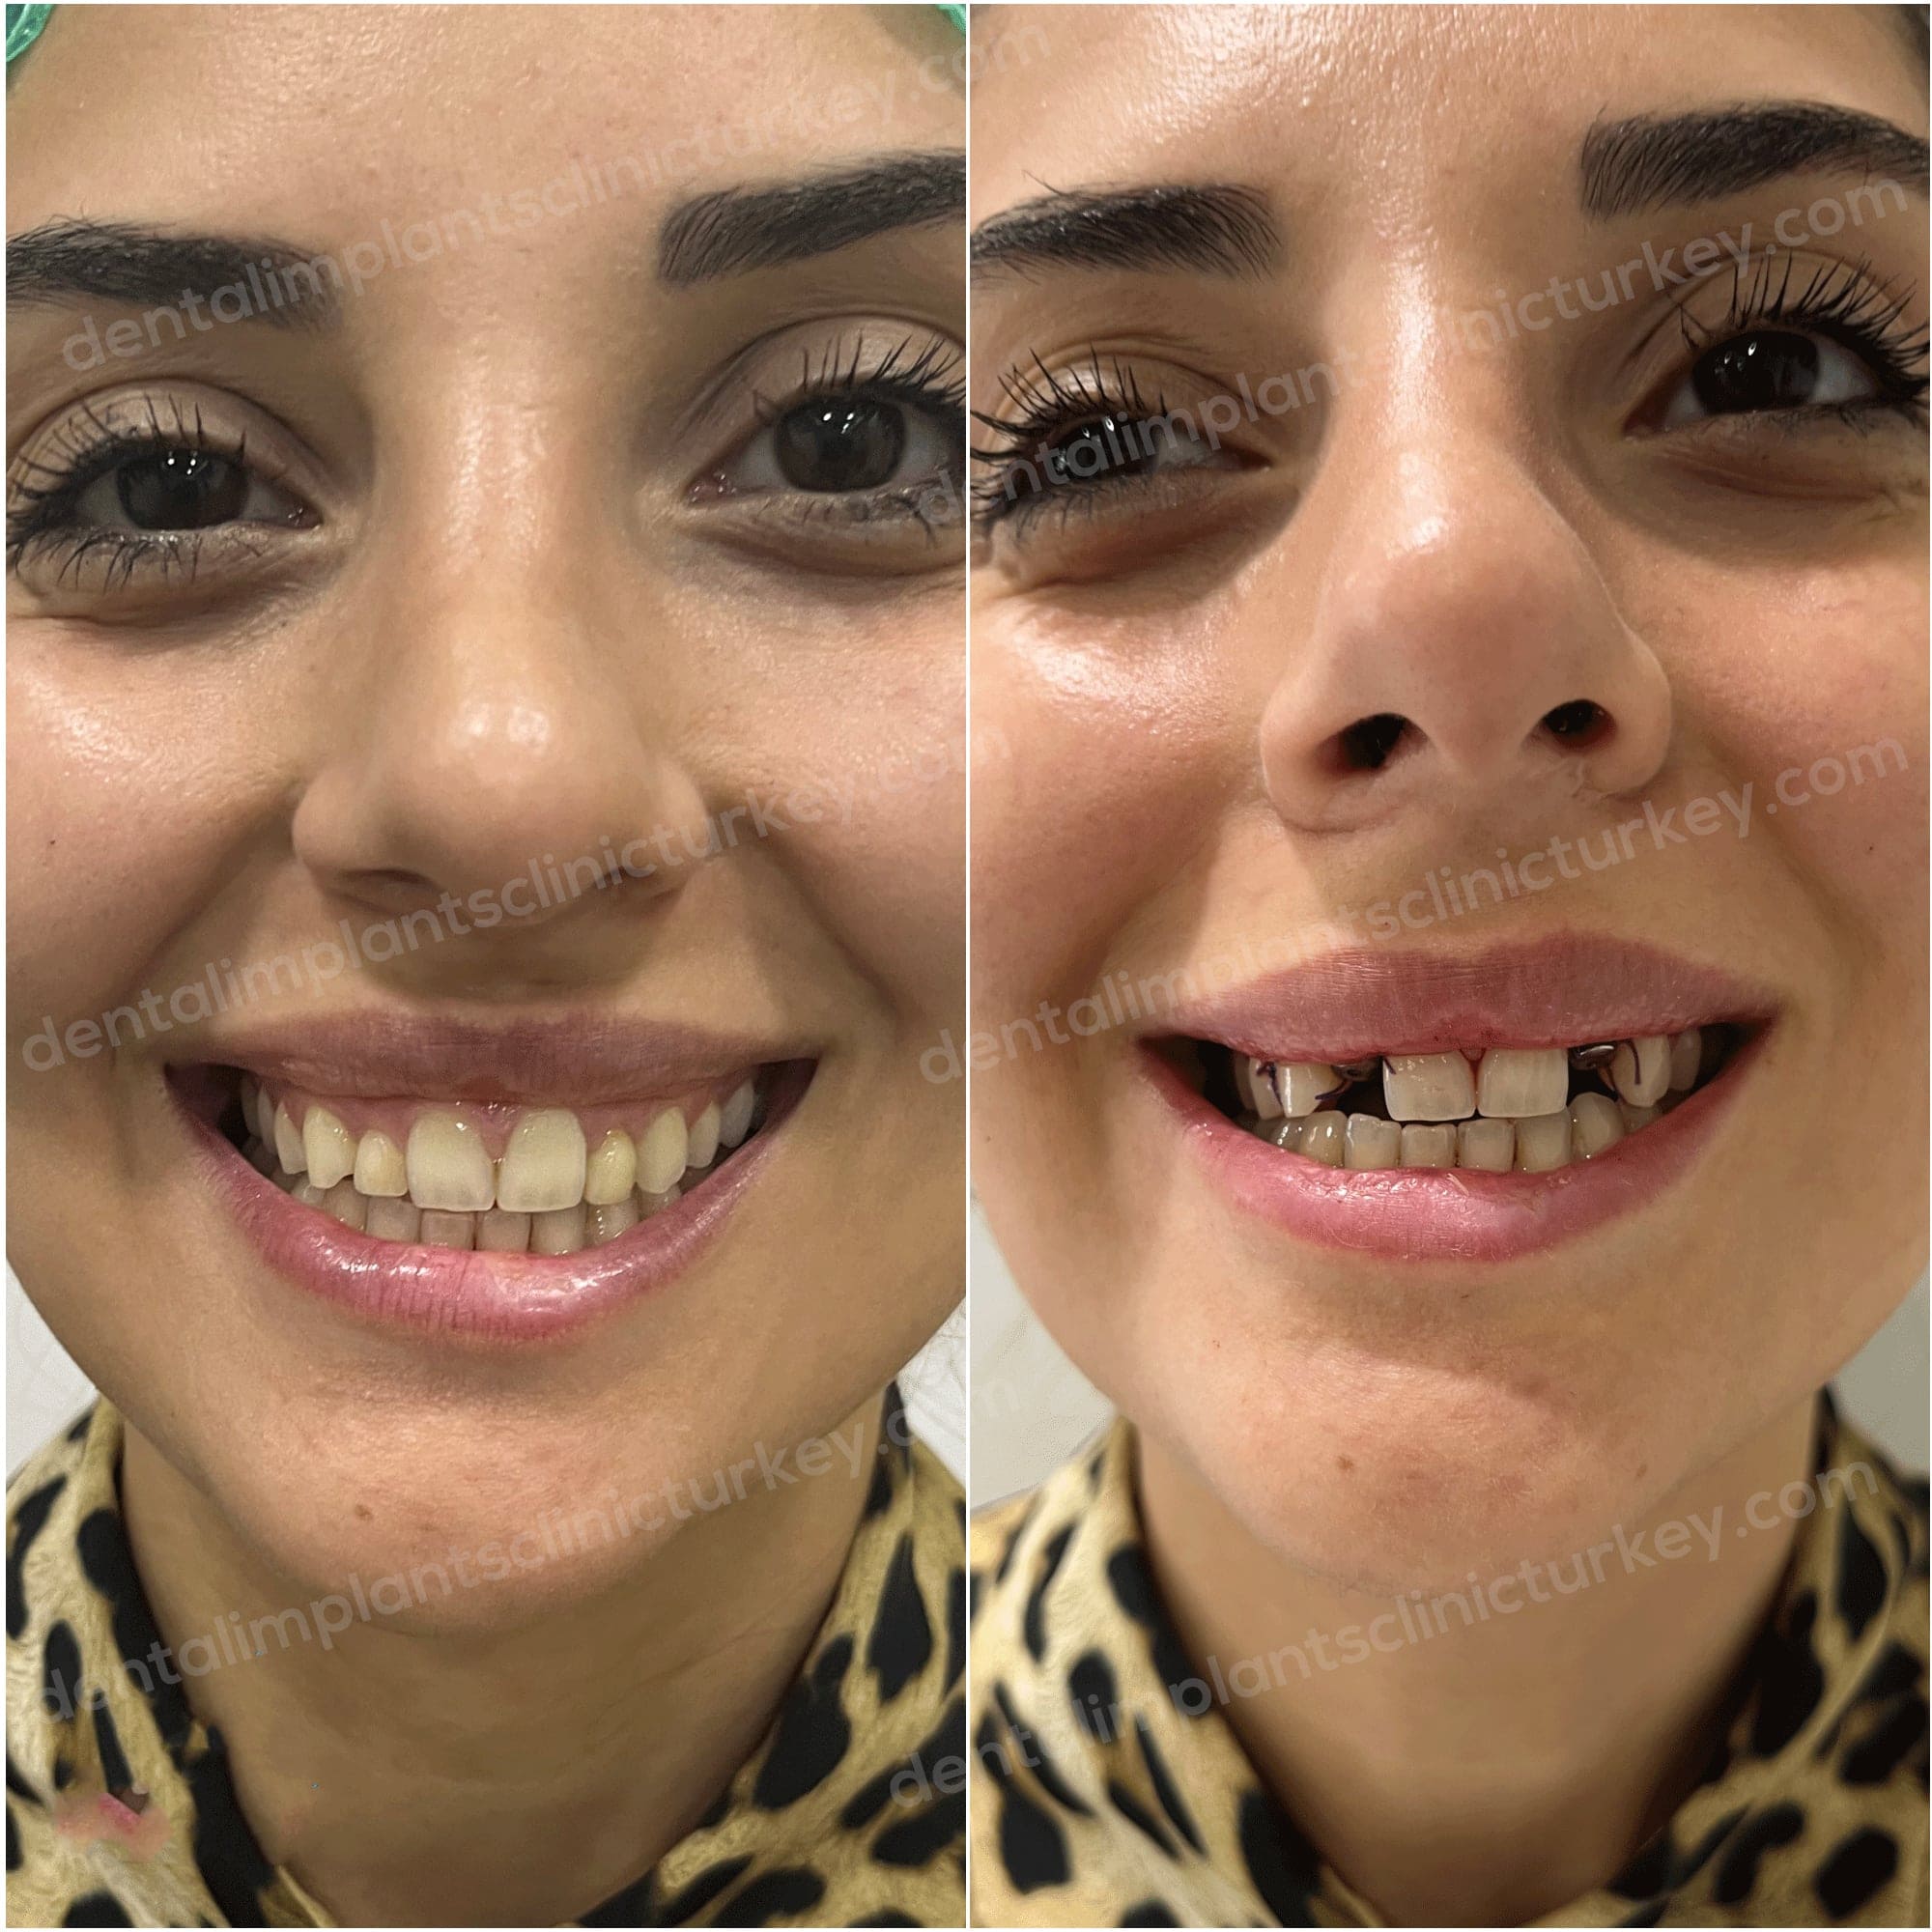 Dental Implants Before After Image